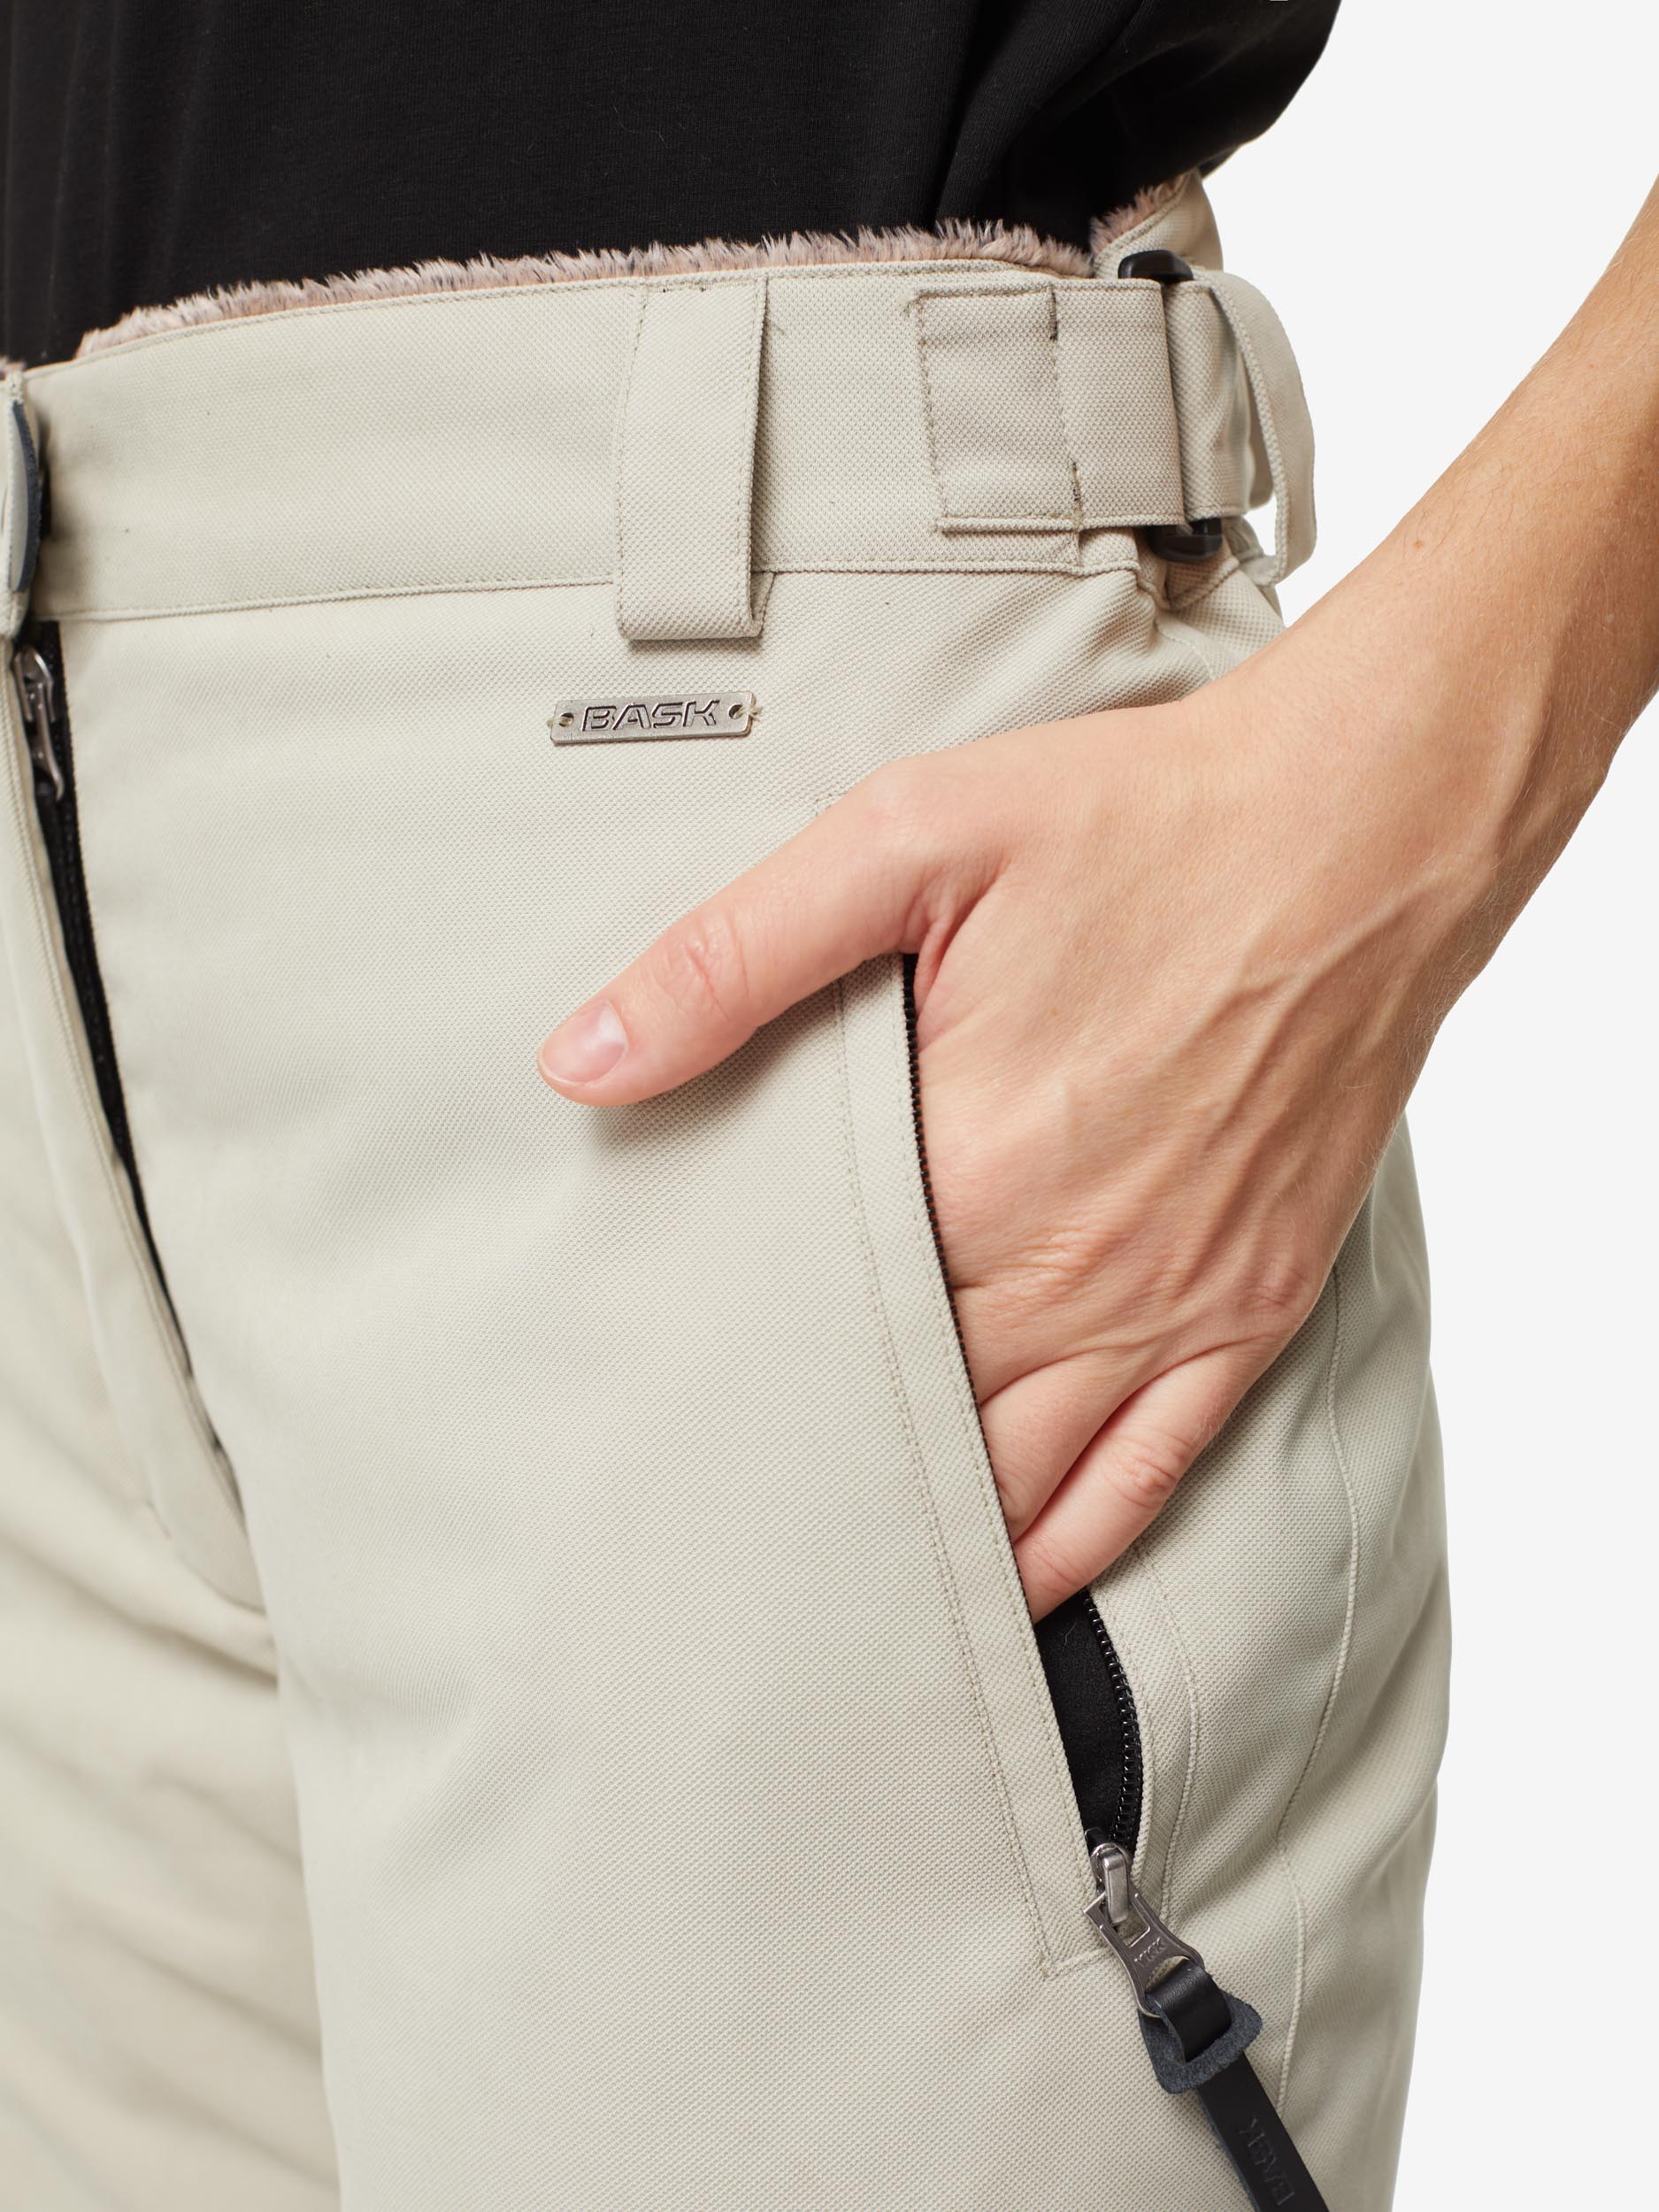 Пуховые брюки BASK, размер 50, цвет коричневый 3780-9905-050 MANARAGA - фото 6